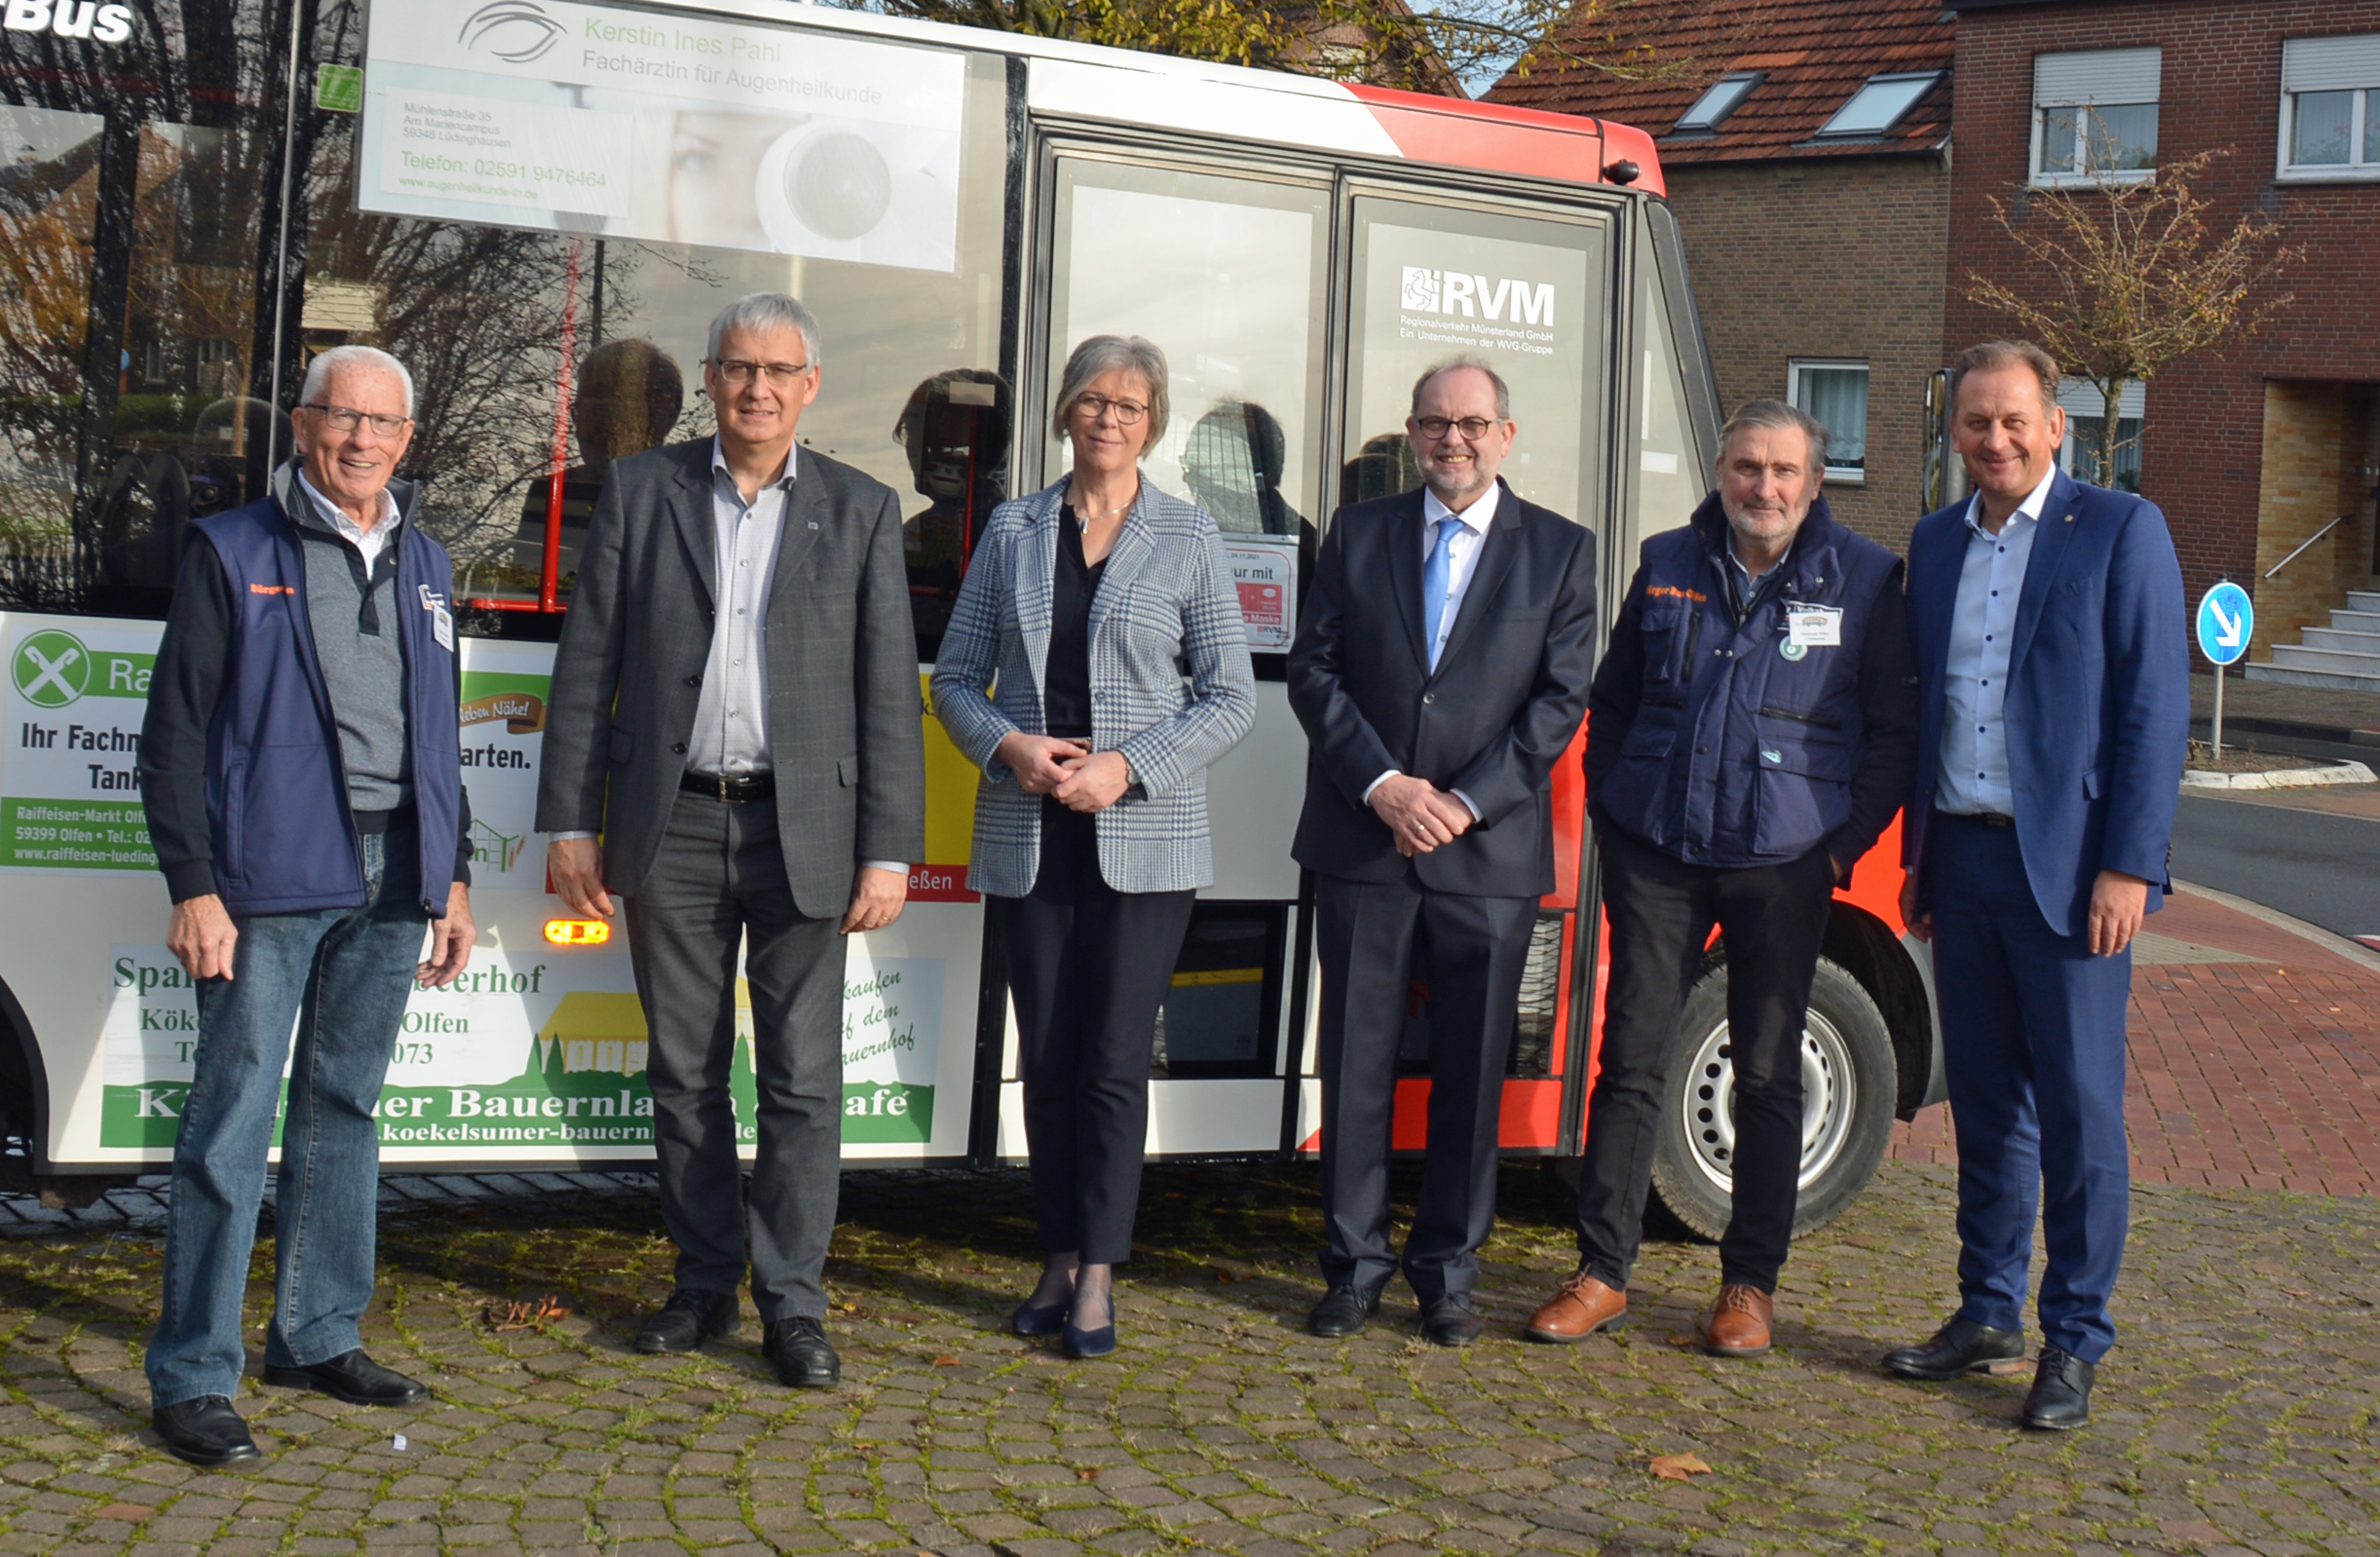 25 Jahre Bürgerbus Bürgerbus-Verein in Olfen | Olfen